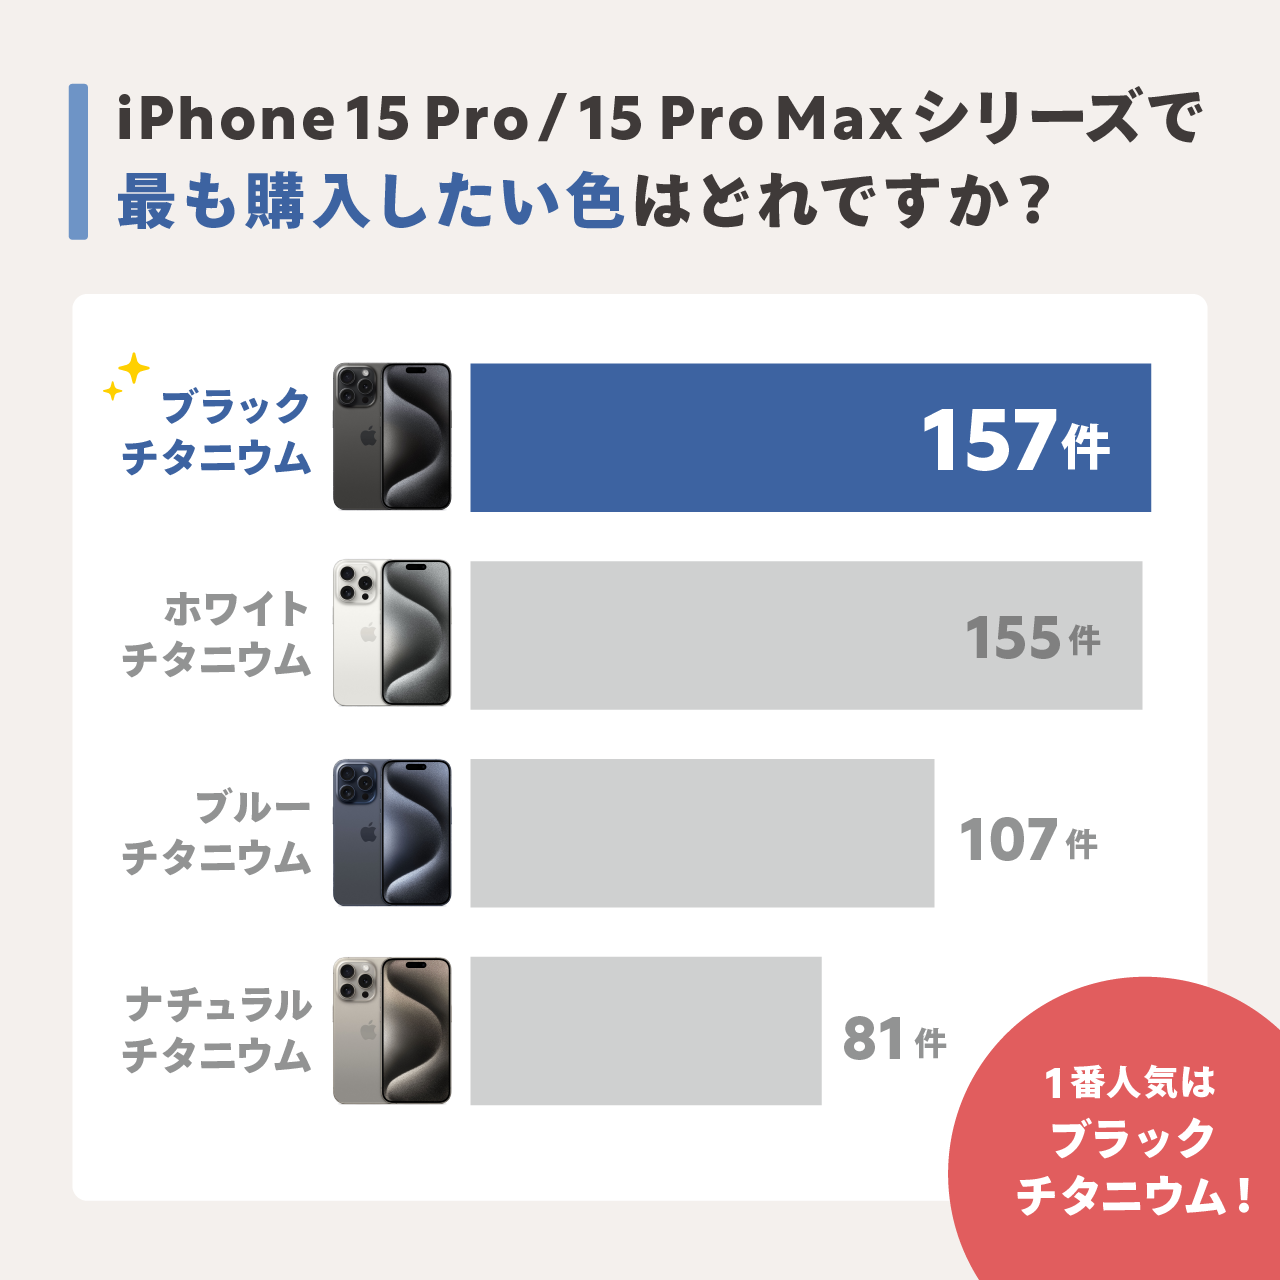 iPhone 15 Pro/15 Pro Maxシリーズで１番人気のカラーは「ブラックチタニウム」